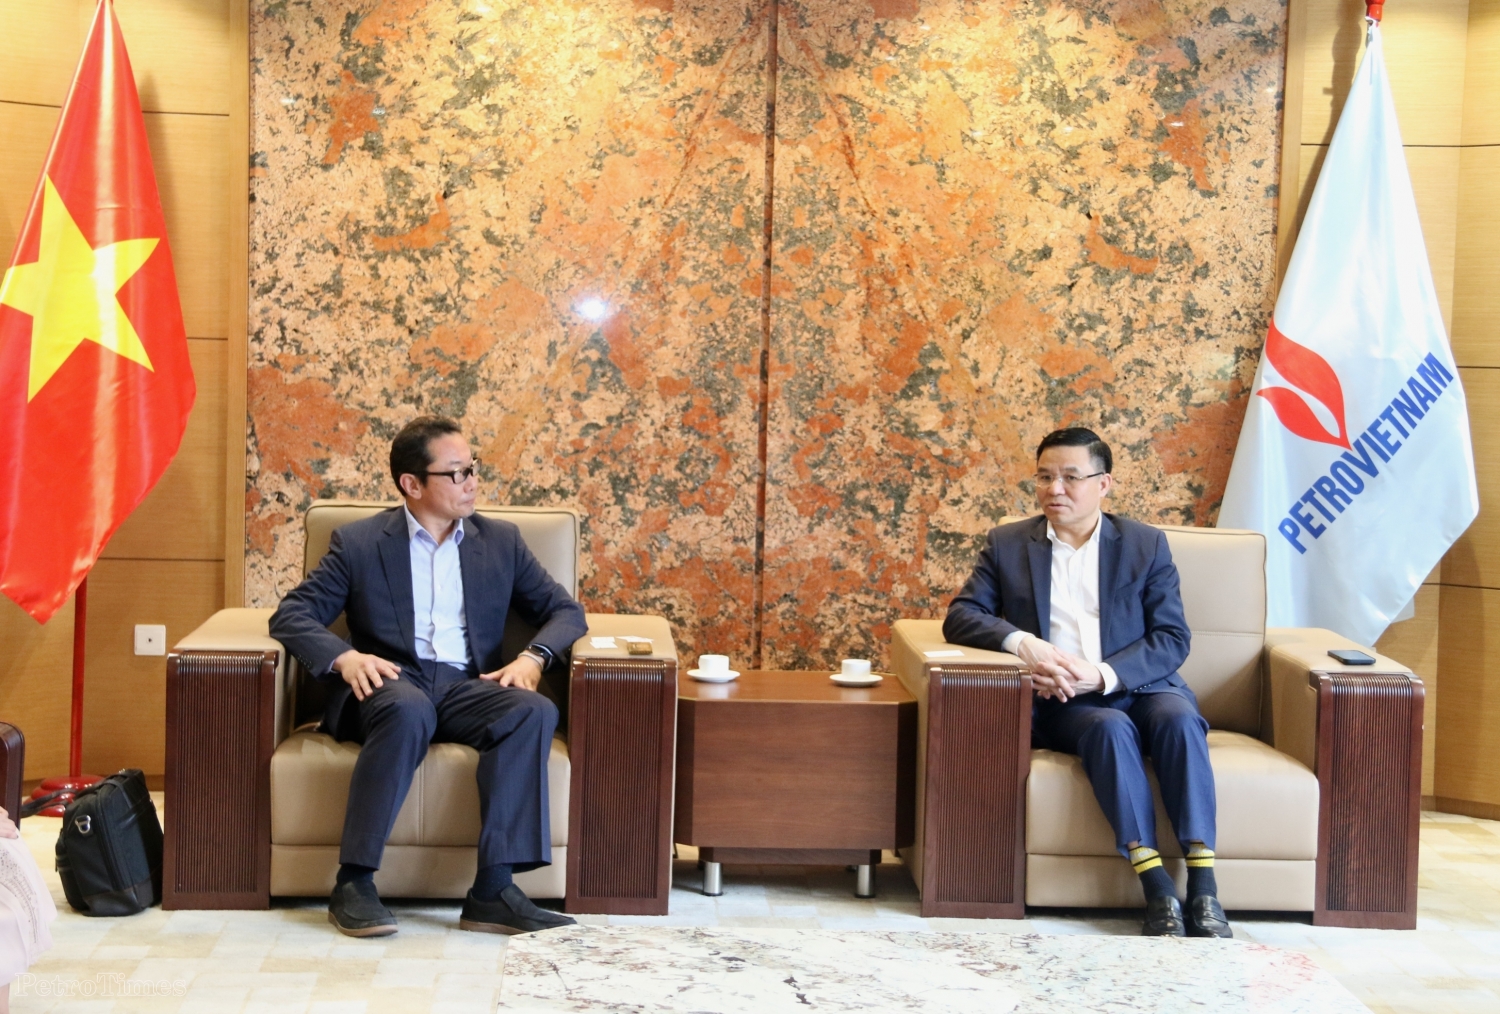 Tổng Giám đốc Petrovietnam Lê Mạnh Hùng trao đổi với ông Seiji Kawamura, Tổng Giám đốc Ban Năng lượng và Điện châu Á Marubini